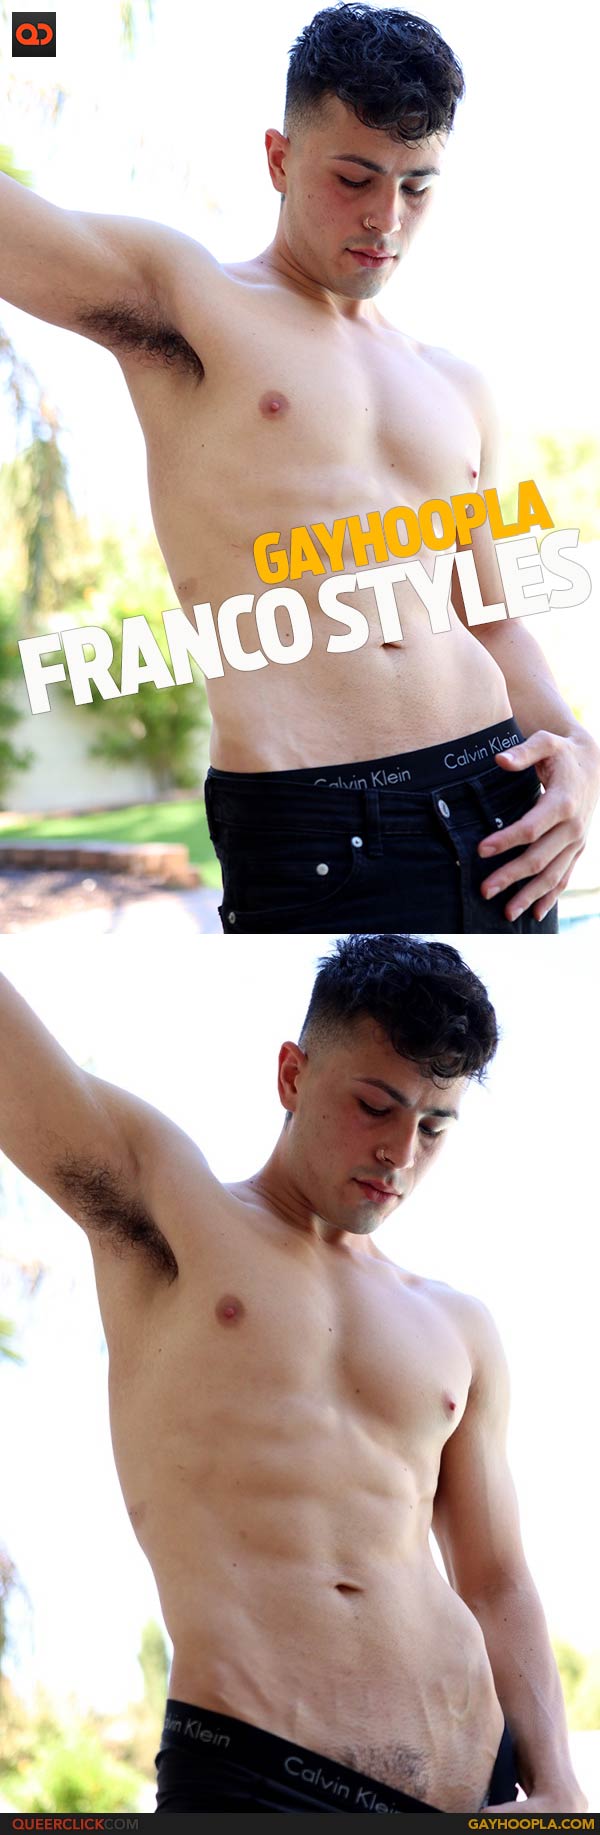 GayHoopla: Franco Styles